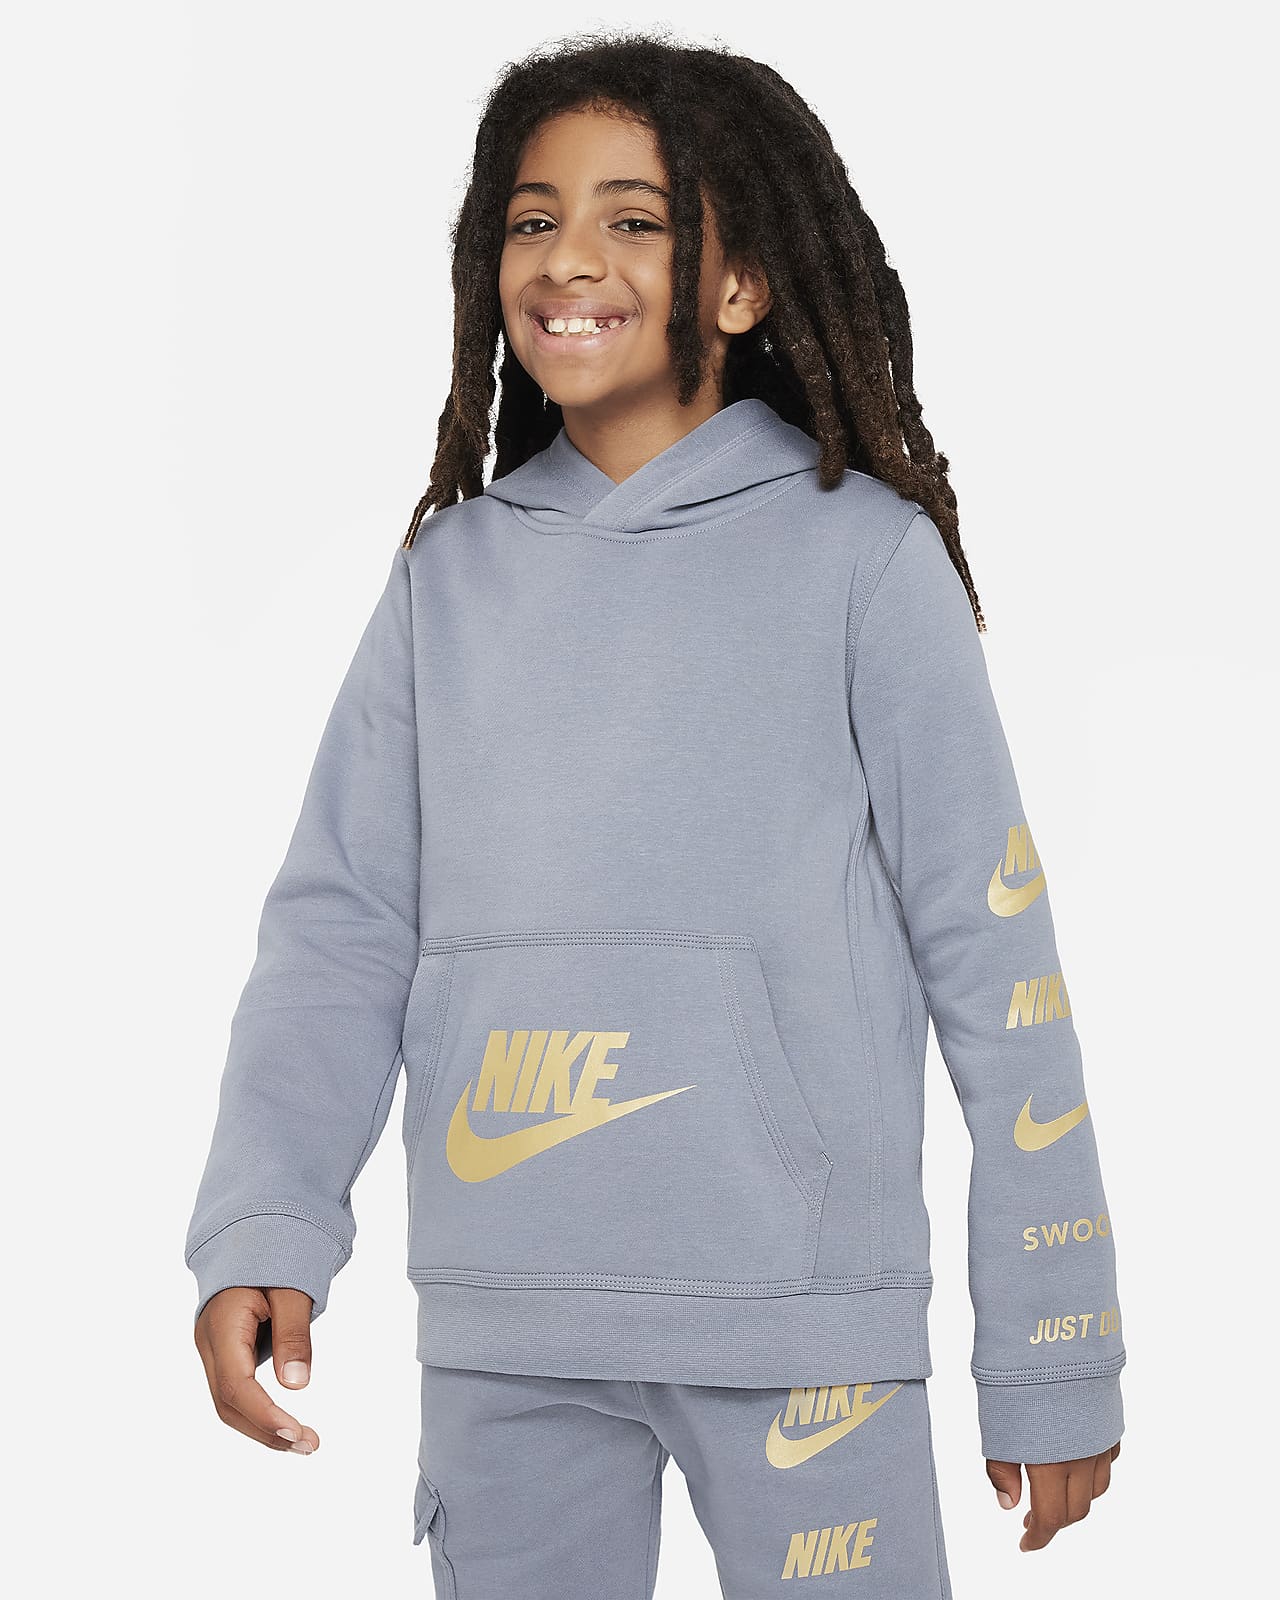 Standard LU Pullover Nike Kids\' Issue Hoodie. Fleece Nike Sportswear Older